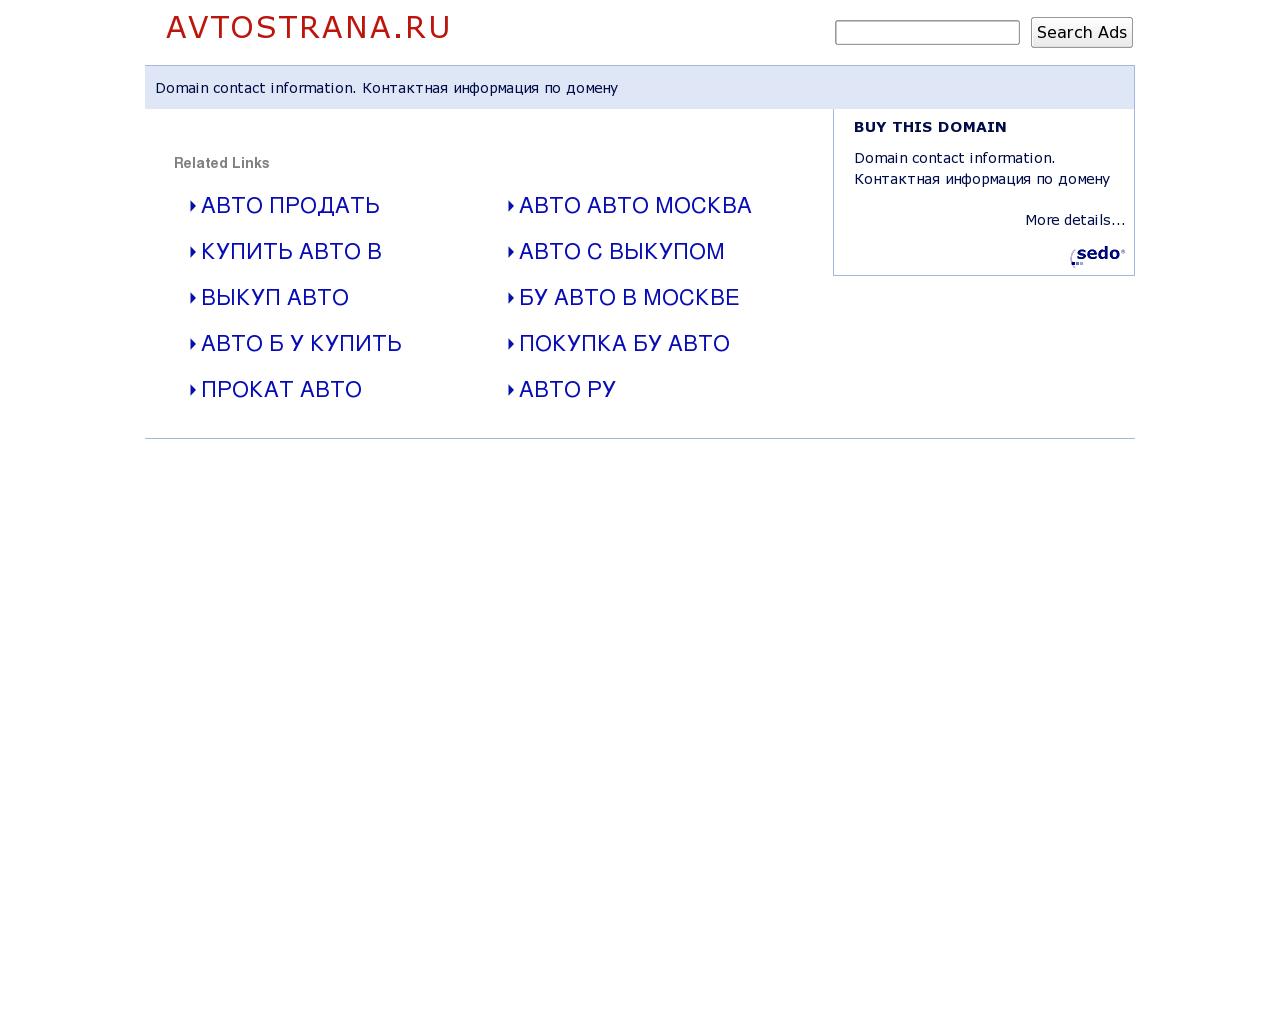 Изображение сайта avtostrana.ru в разрешении 1280x1024